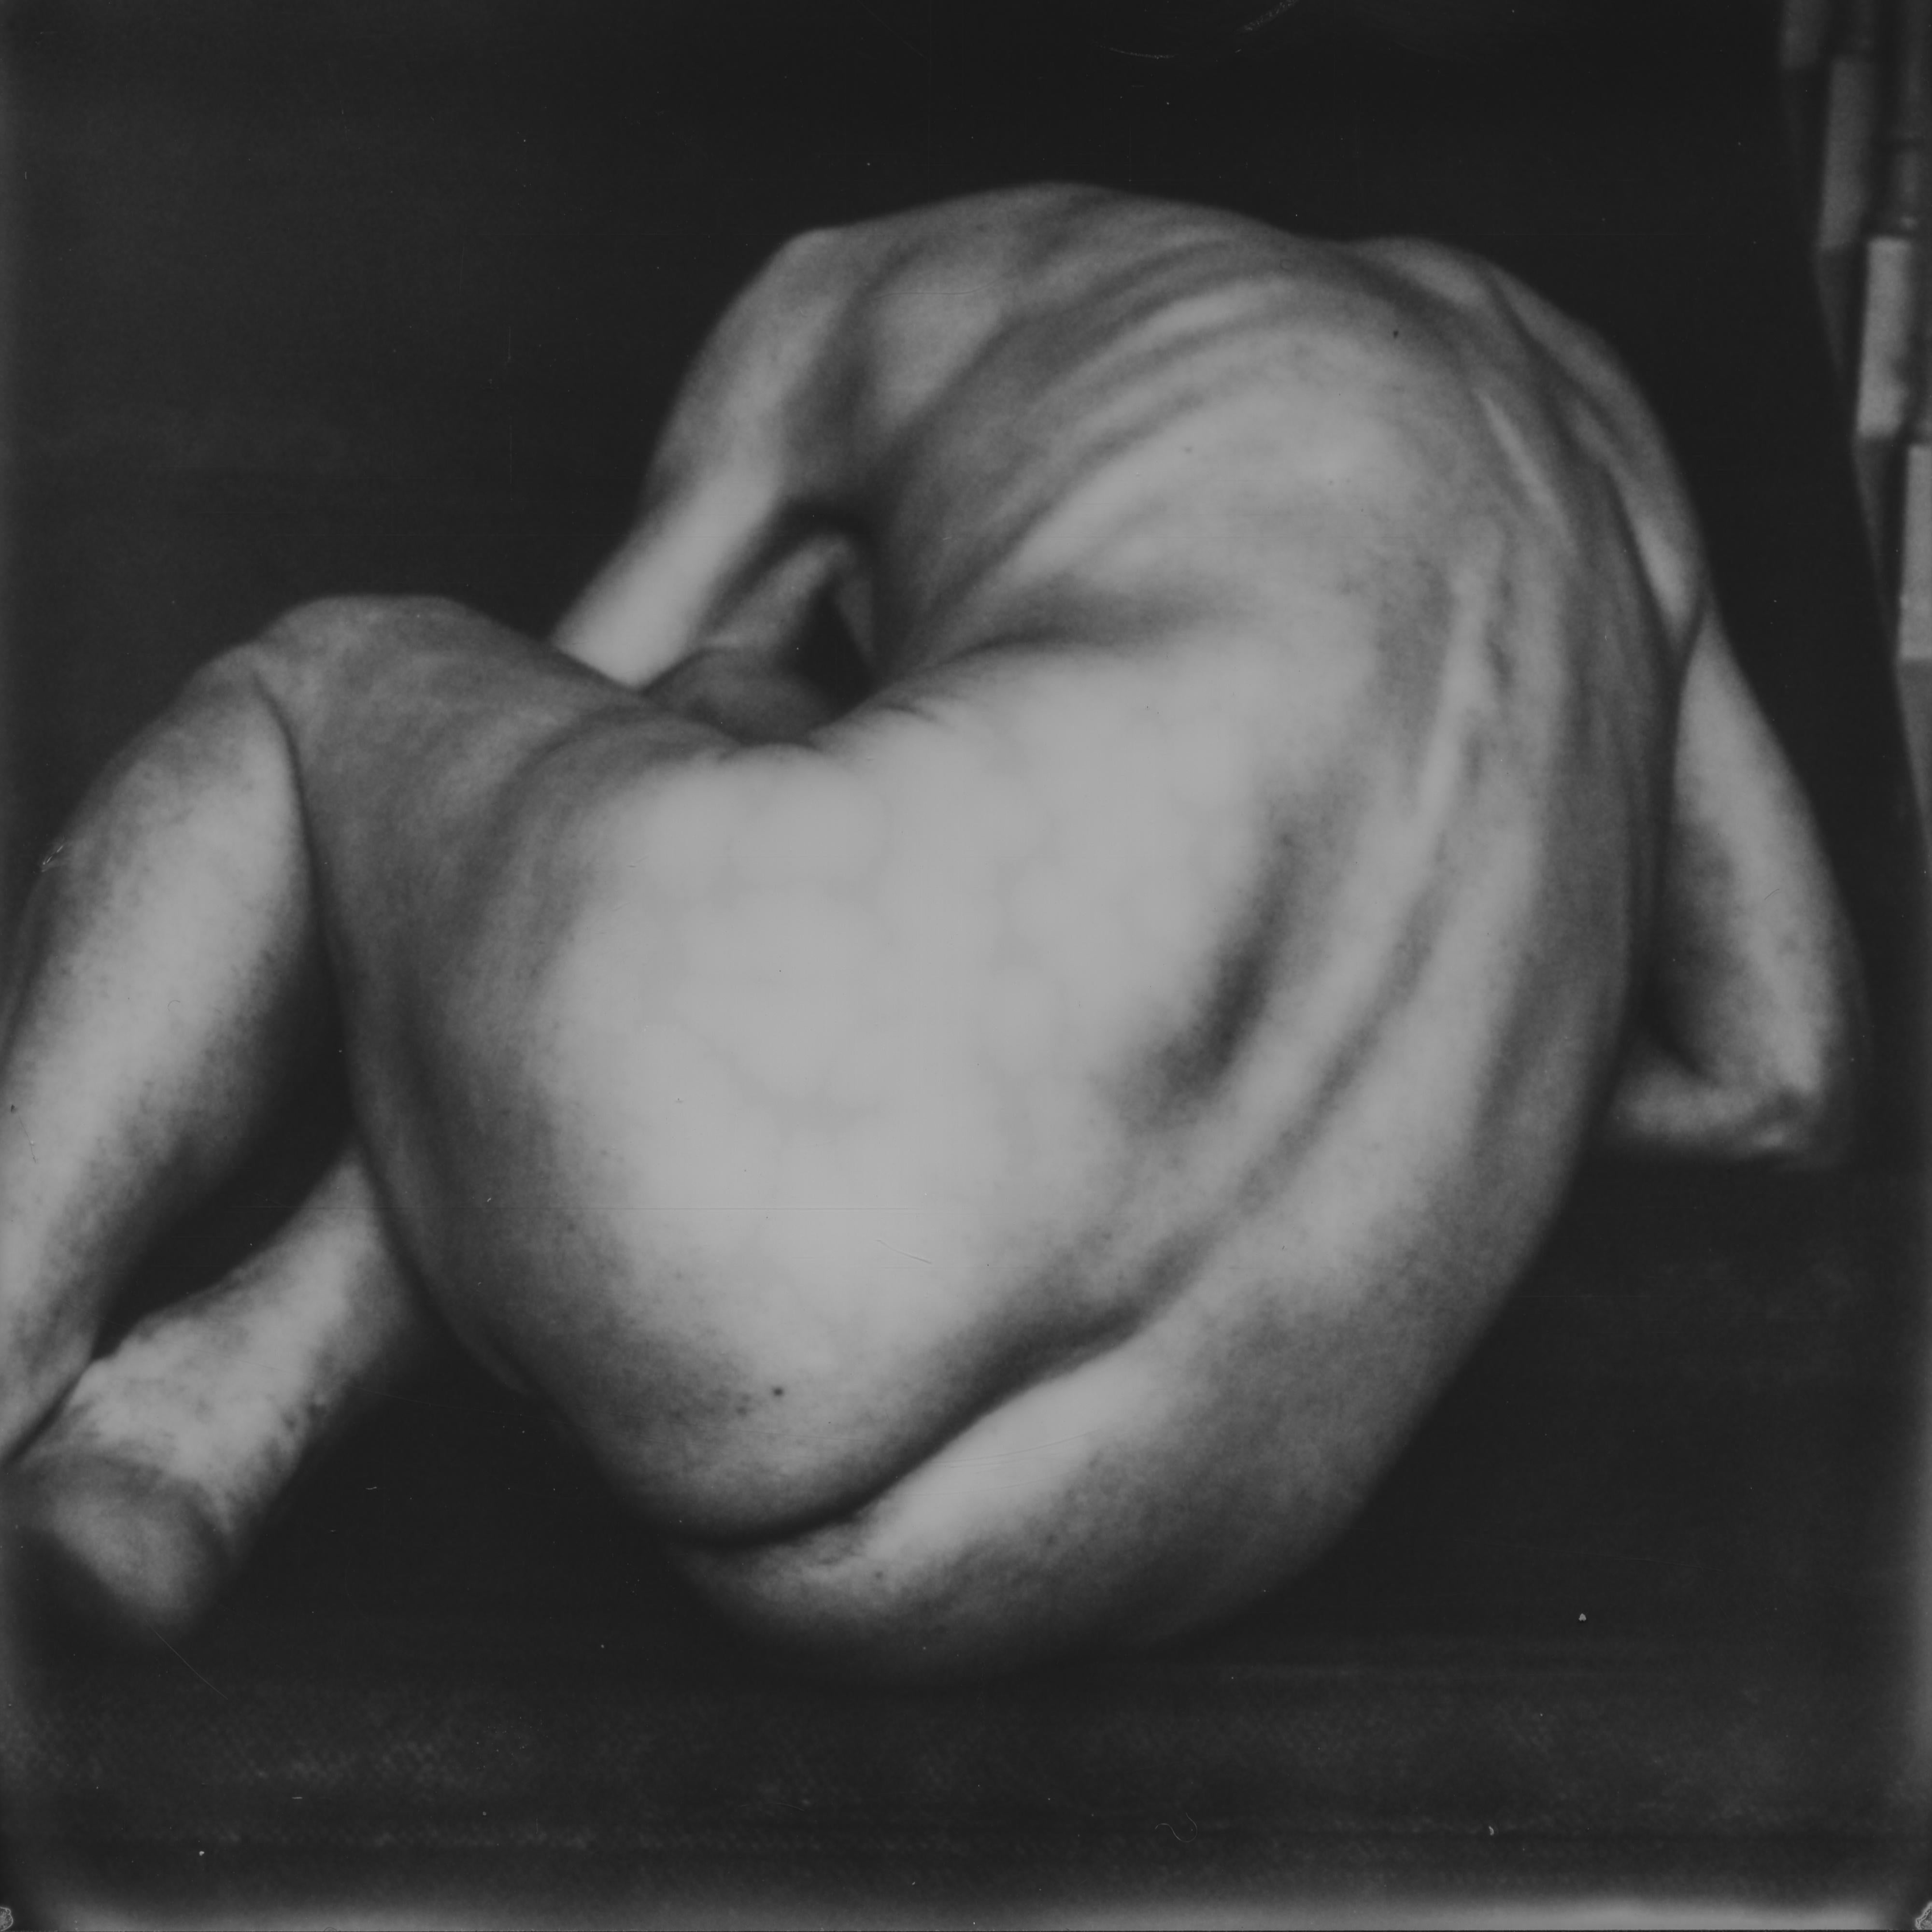 Heute - Zeitgenössisch, Nackt, Männer, Polaroid, 21. Jahrhundert